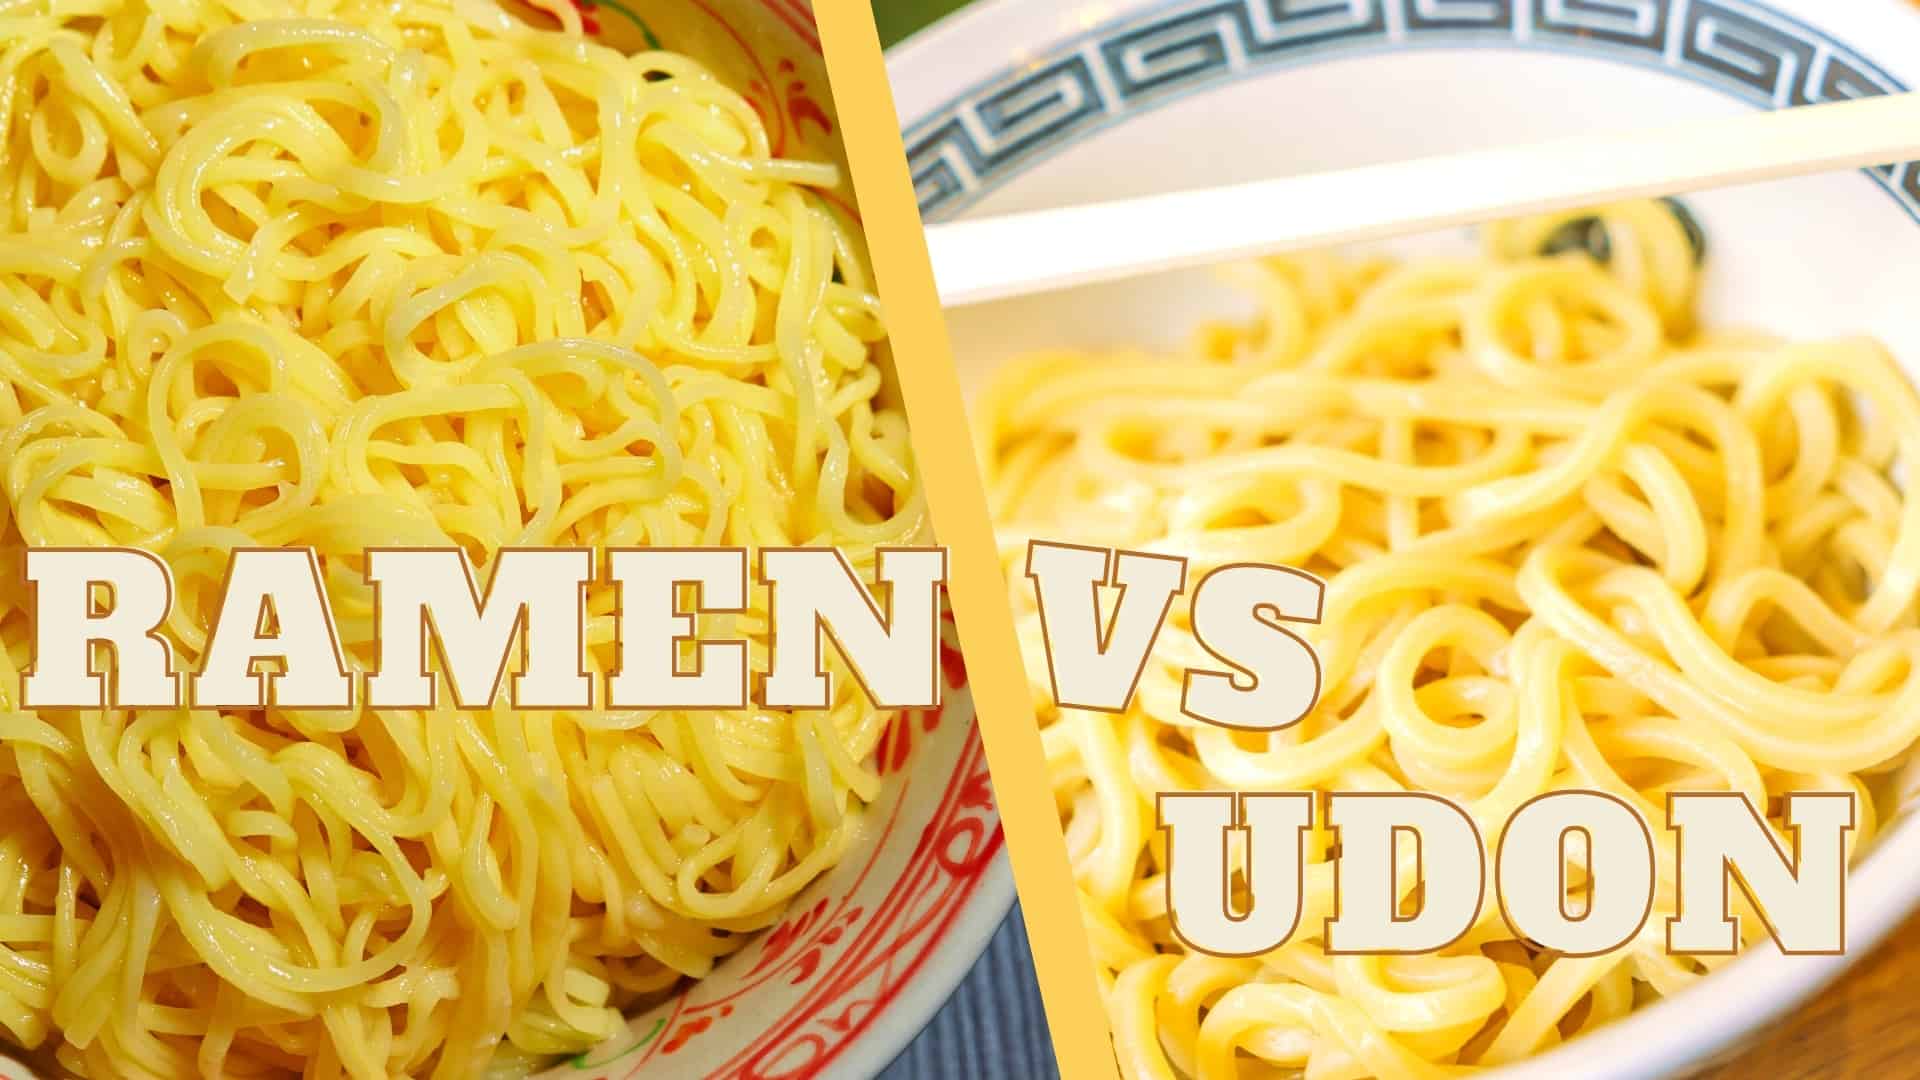 Li-noodle tsa Ramen vs udon